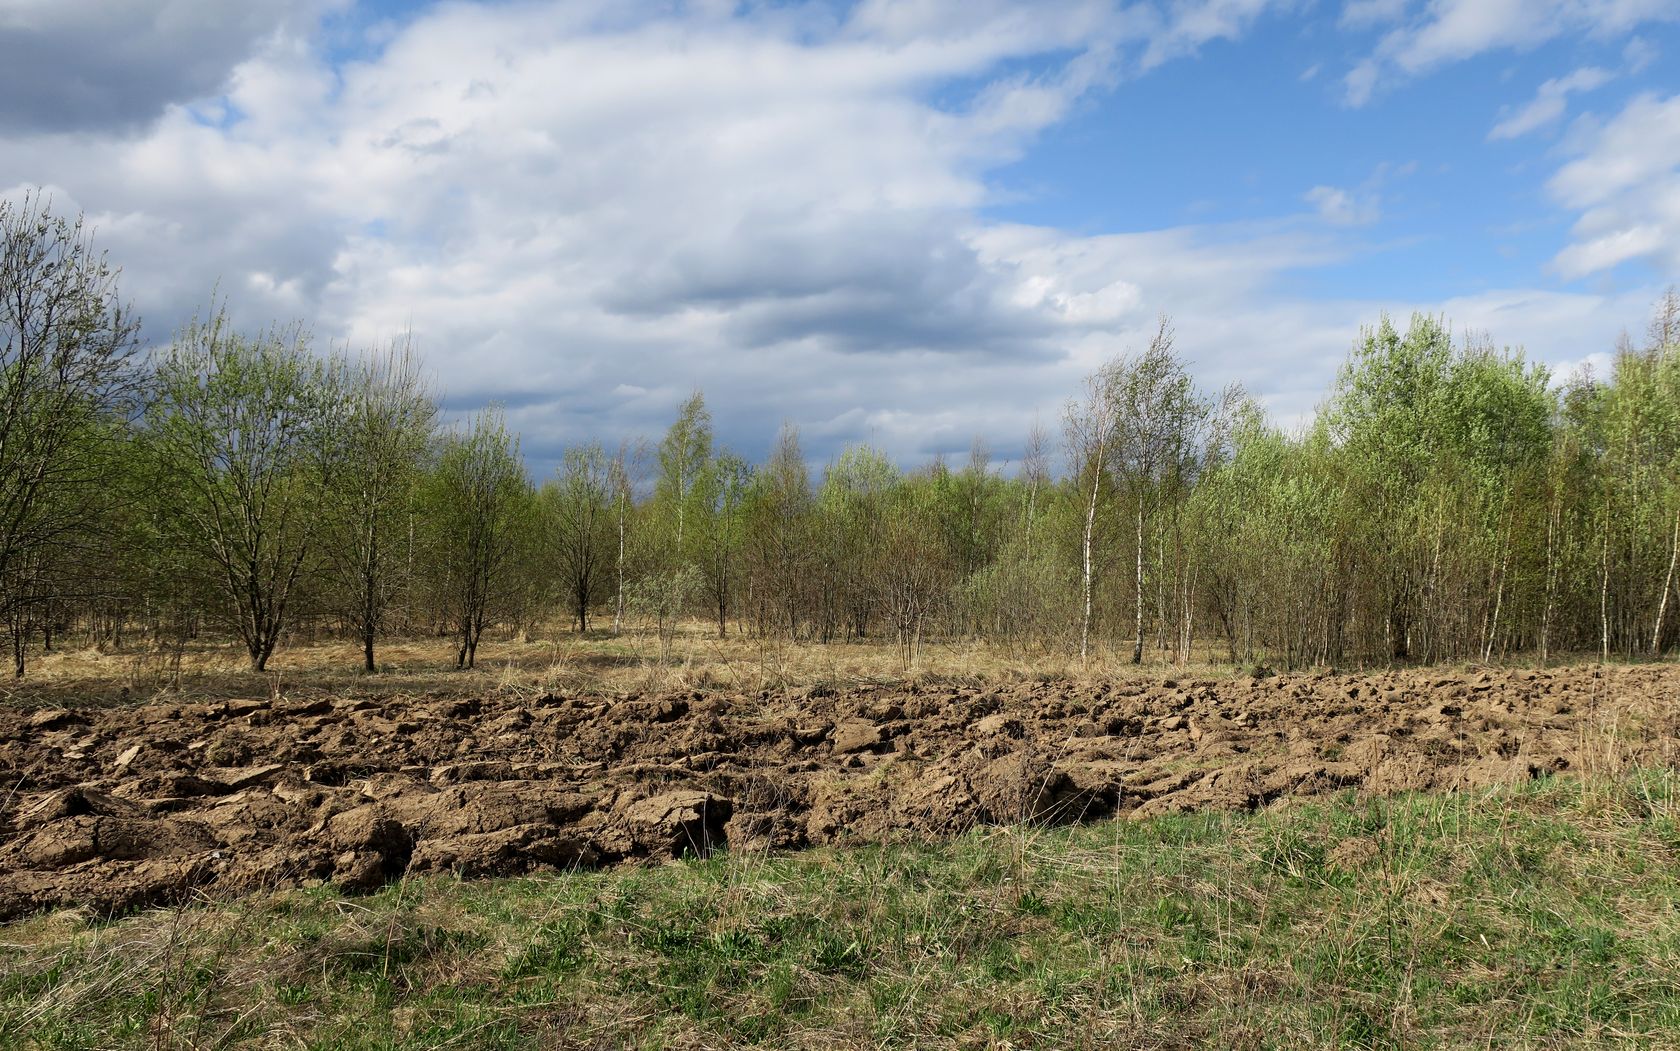 Ярцево, image of landscape/habitat.